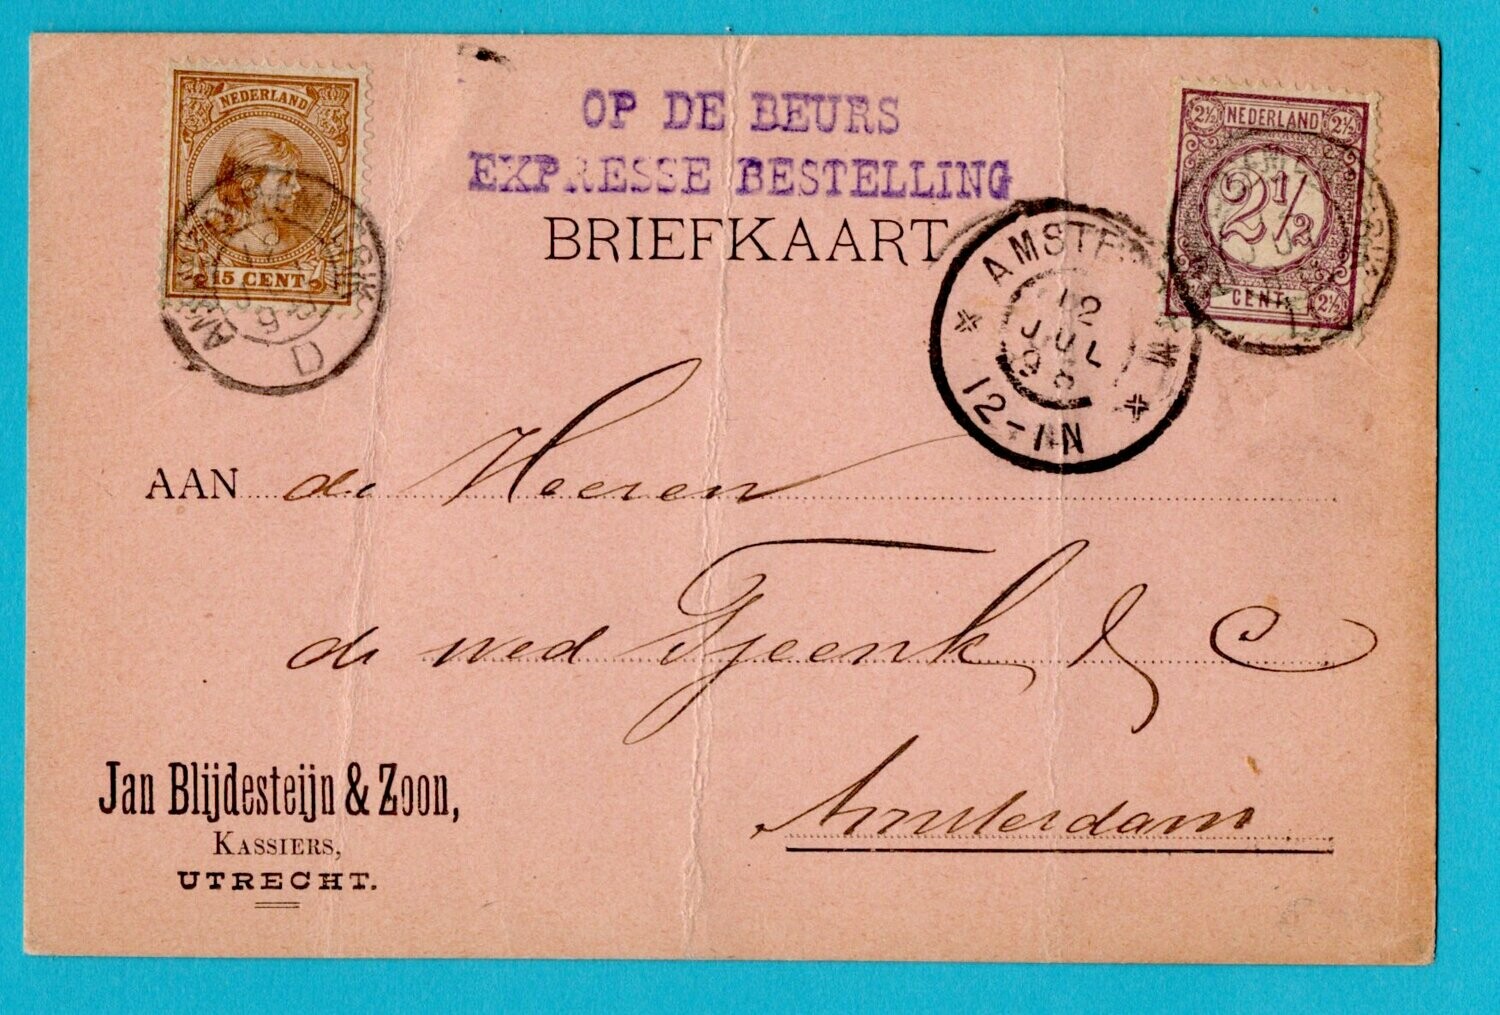 NEDERLAND expres briefkaart 1898 Amsterdam Emmerik